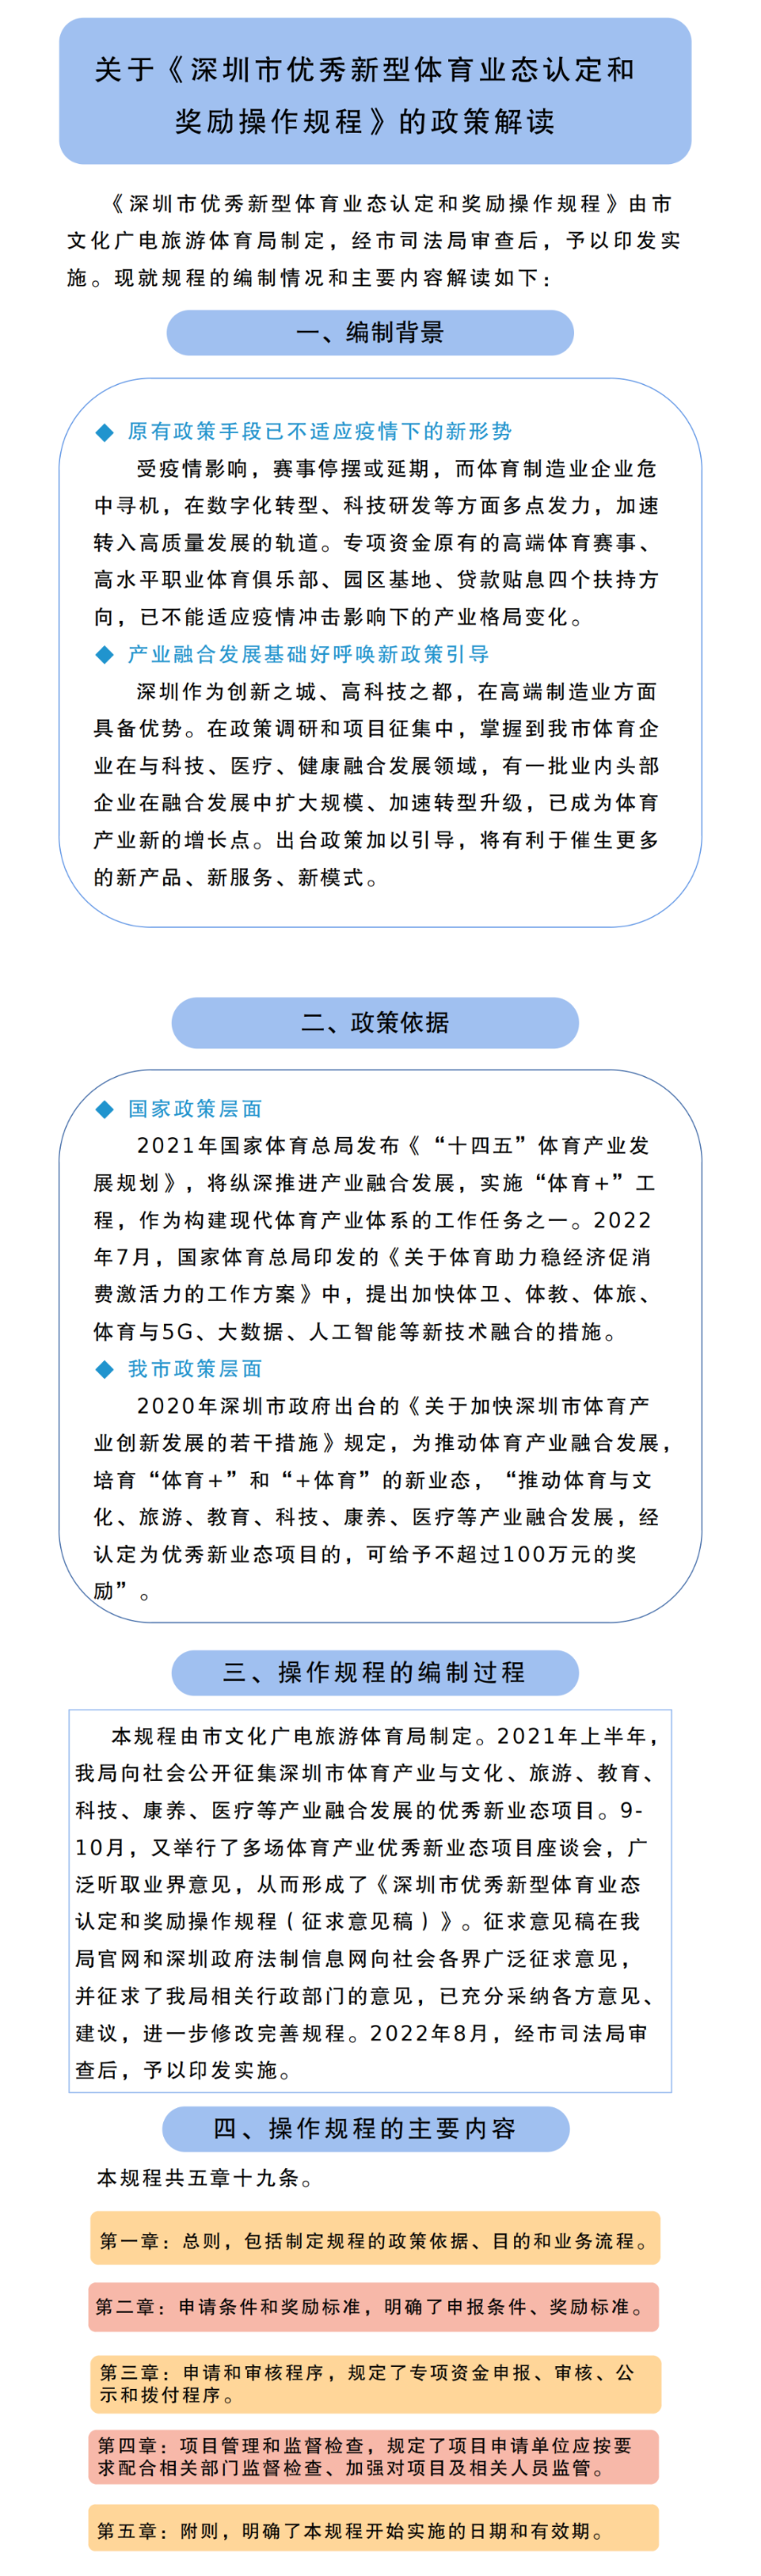 关于《深圳市优秀新型体育业态认定和奖励操作规程》的政策解读